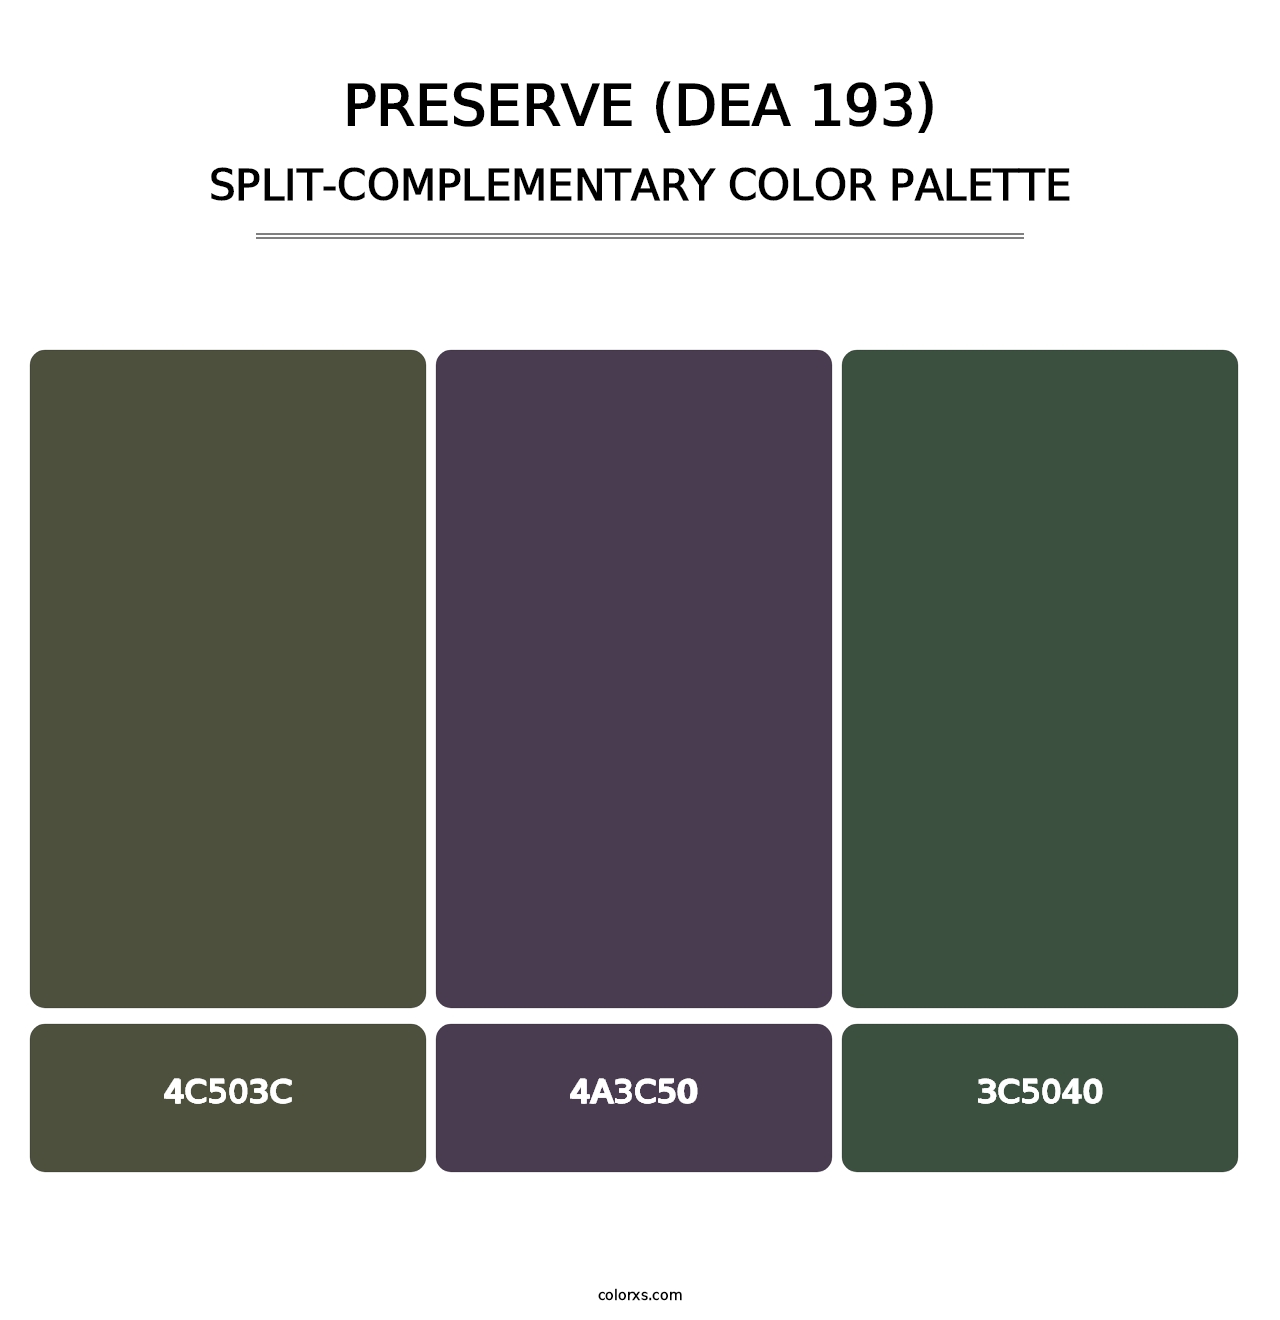 Preserve (DEA 193) - Split-Complementary Color Palette